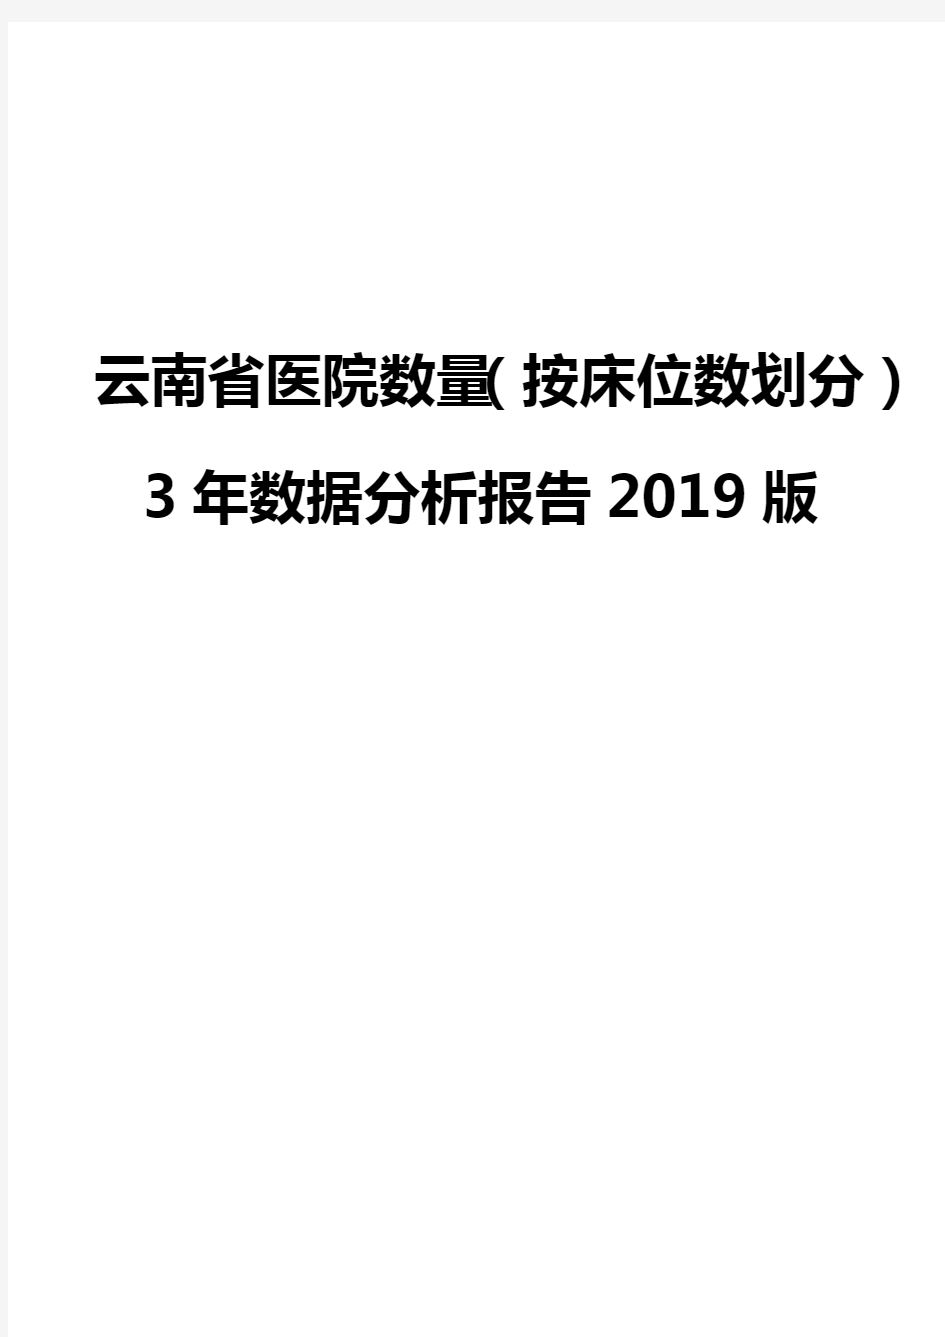 云南省医院数量(按床位数划分)3年数据分析报告2019版